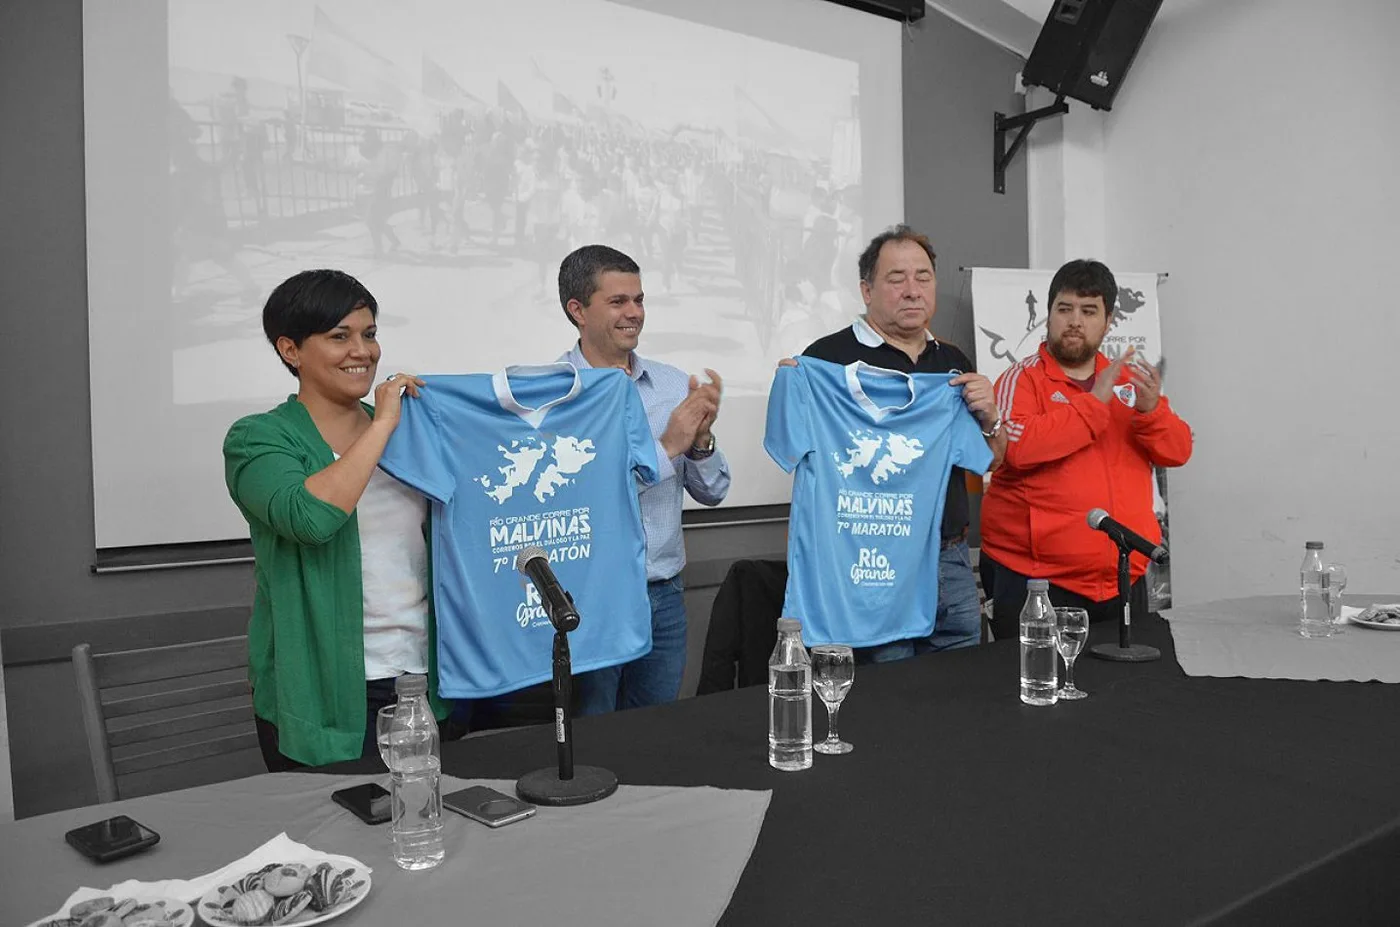 Presentaron la nueva remera de la 7ma. edición del maratón "Río Grande corre por Malvinas".